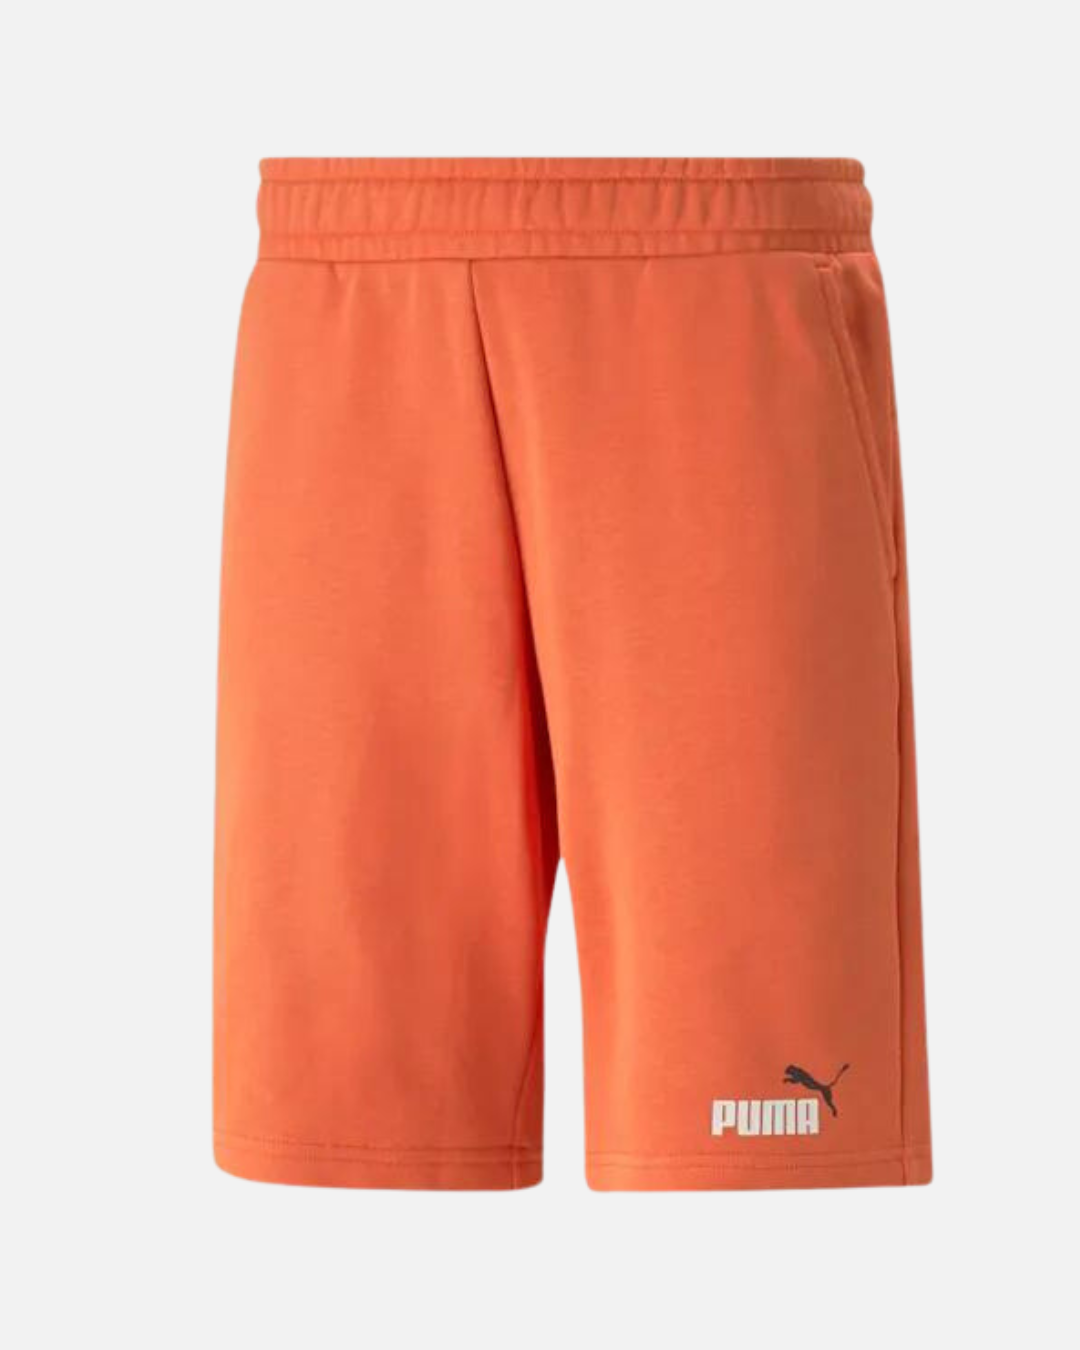 Puma Essentials Shorts - Orange